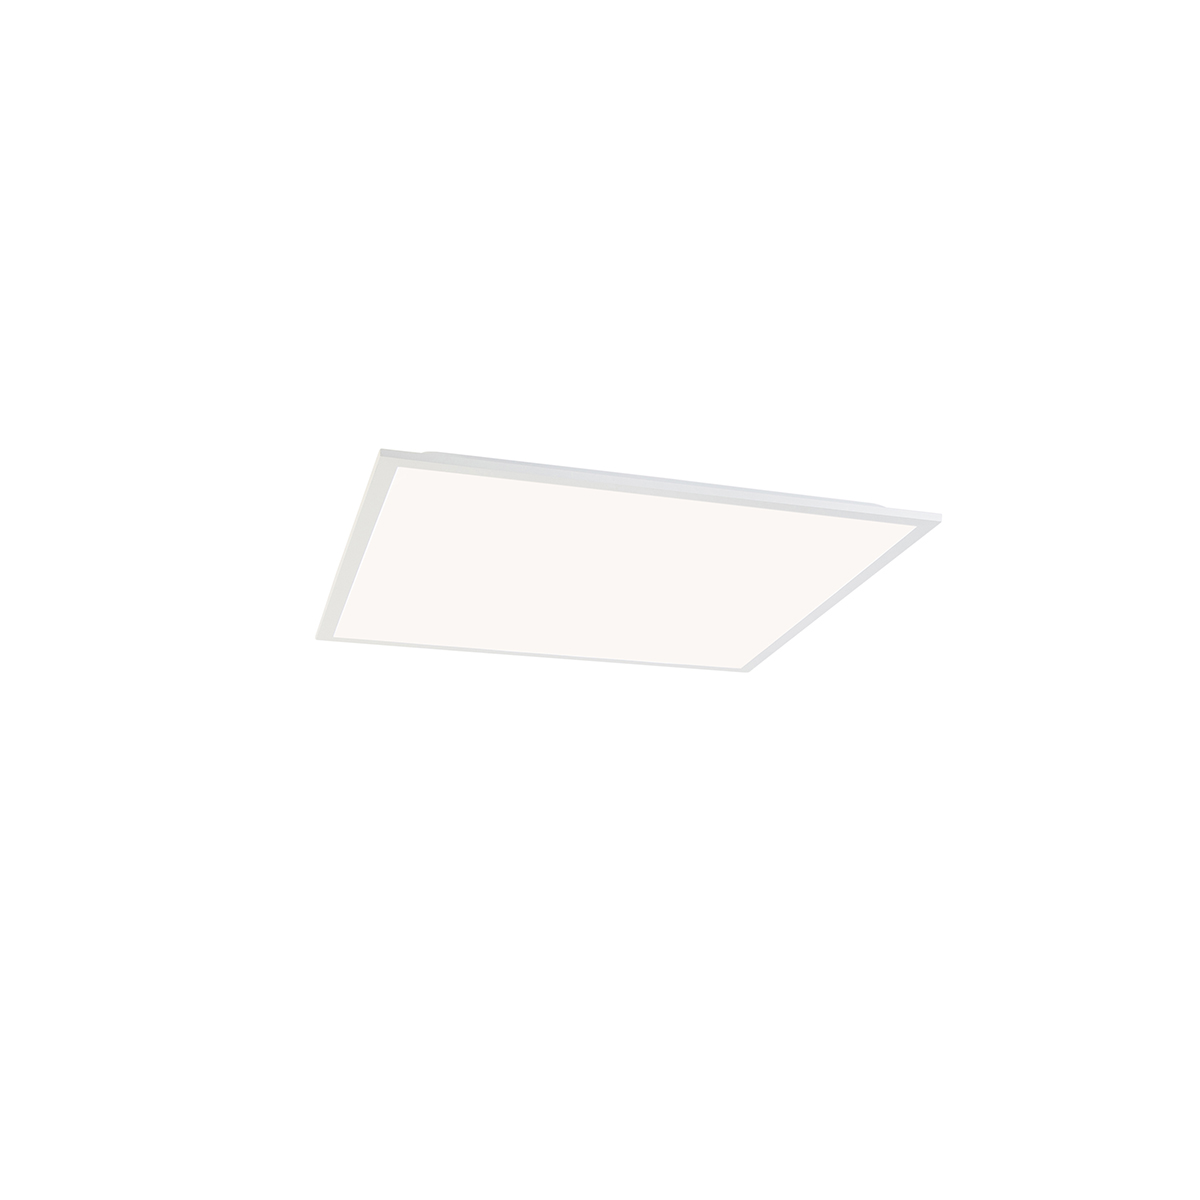 Image of Pannello LED per sistema a soffitto quadrato bianco dimmerabile in Kelvin - Pawel